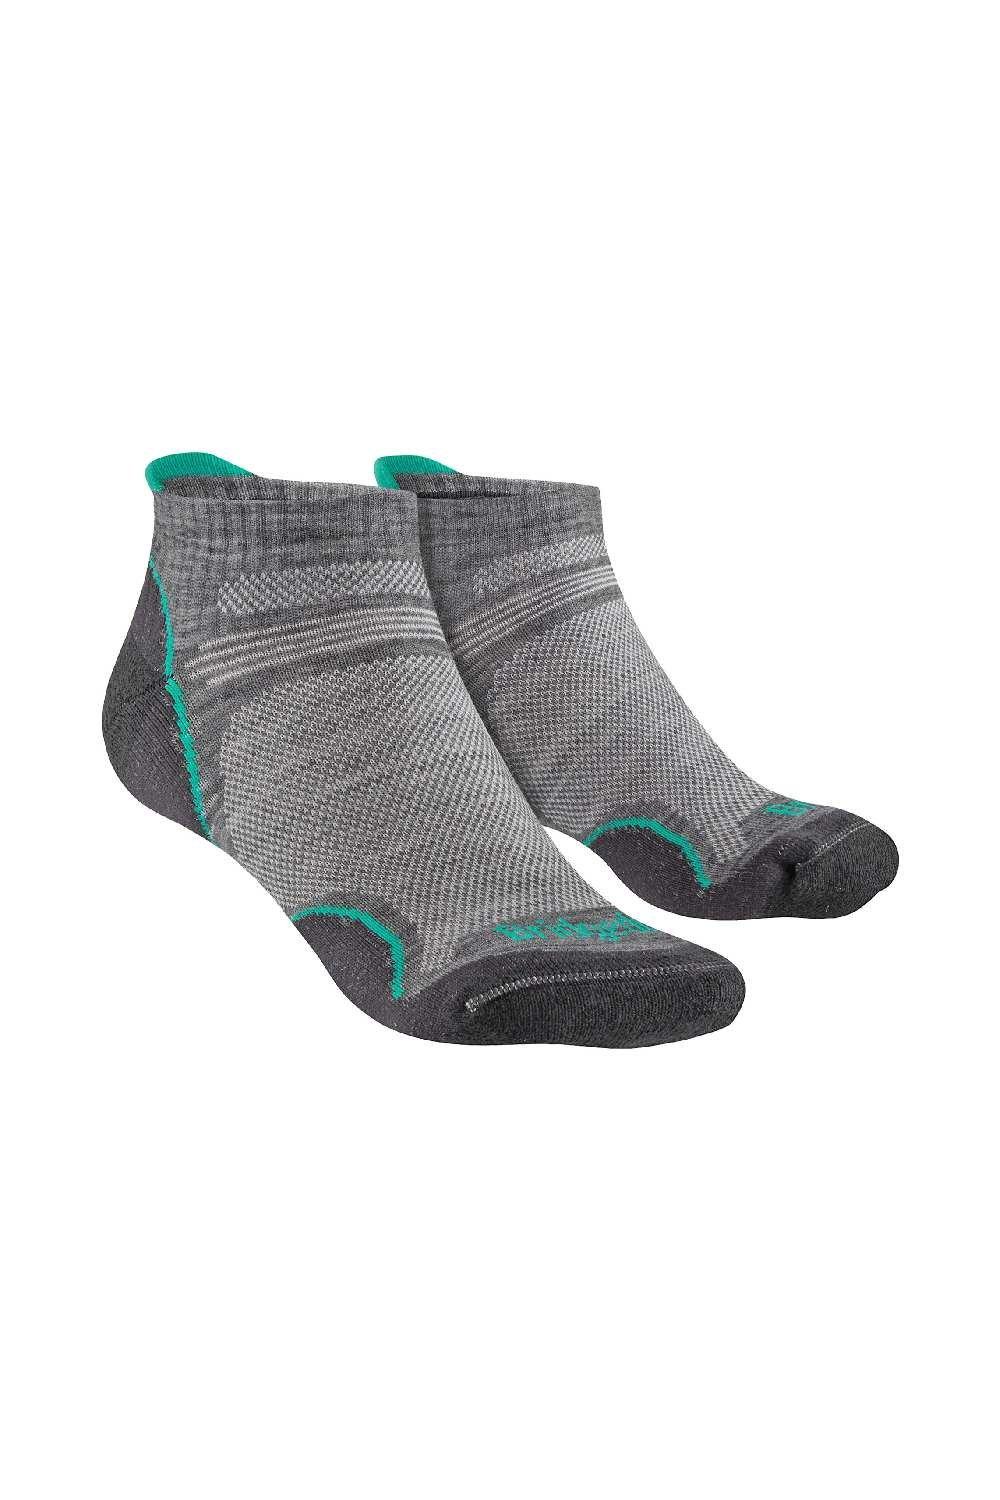 Merino Wool Hiking Ultralight T2 Performance Low Socks